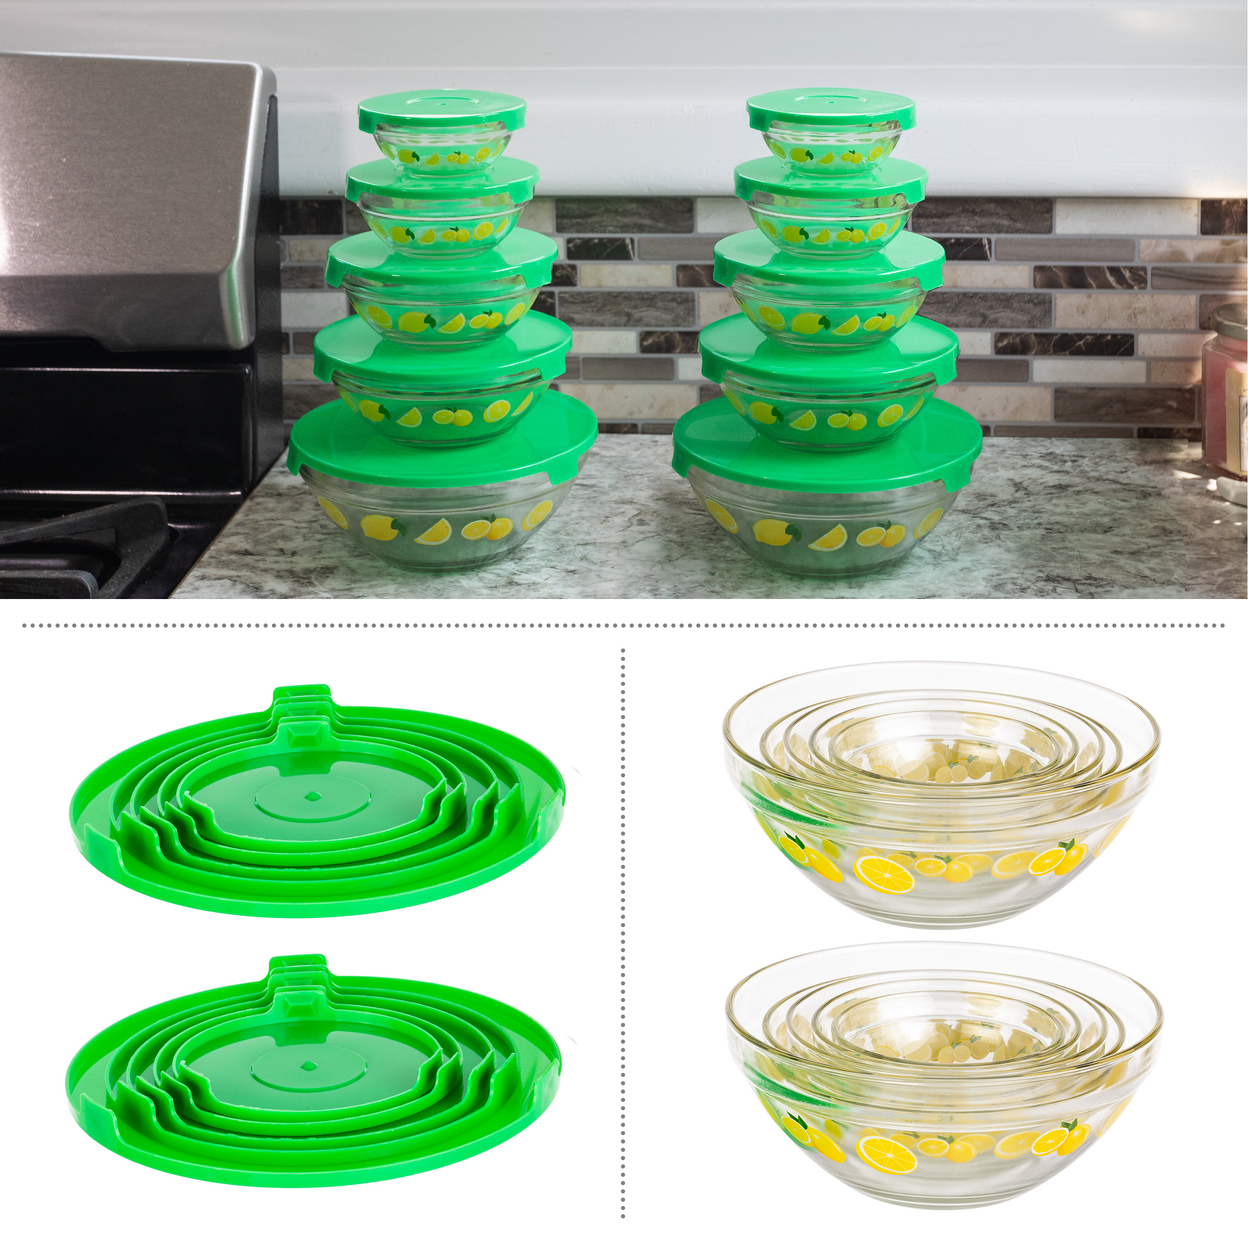 20-Piece Glass Bowls With Lids Set Lemon Design Mixing Bowls Set Multiple Sizes